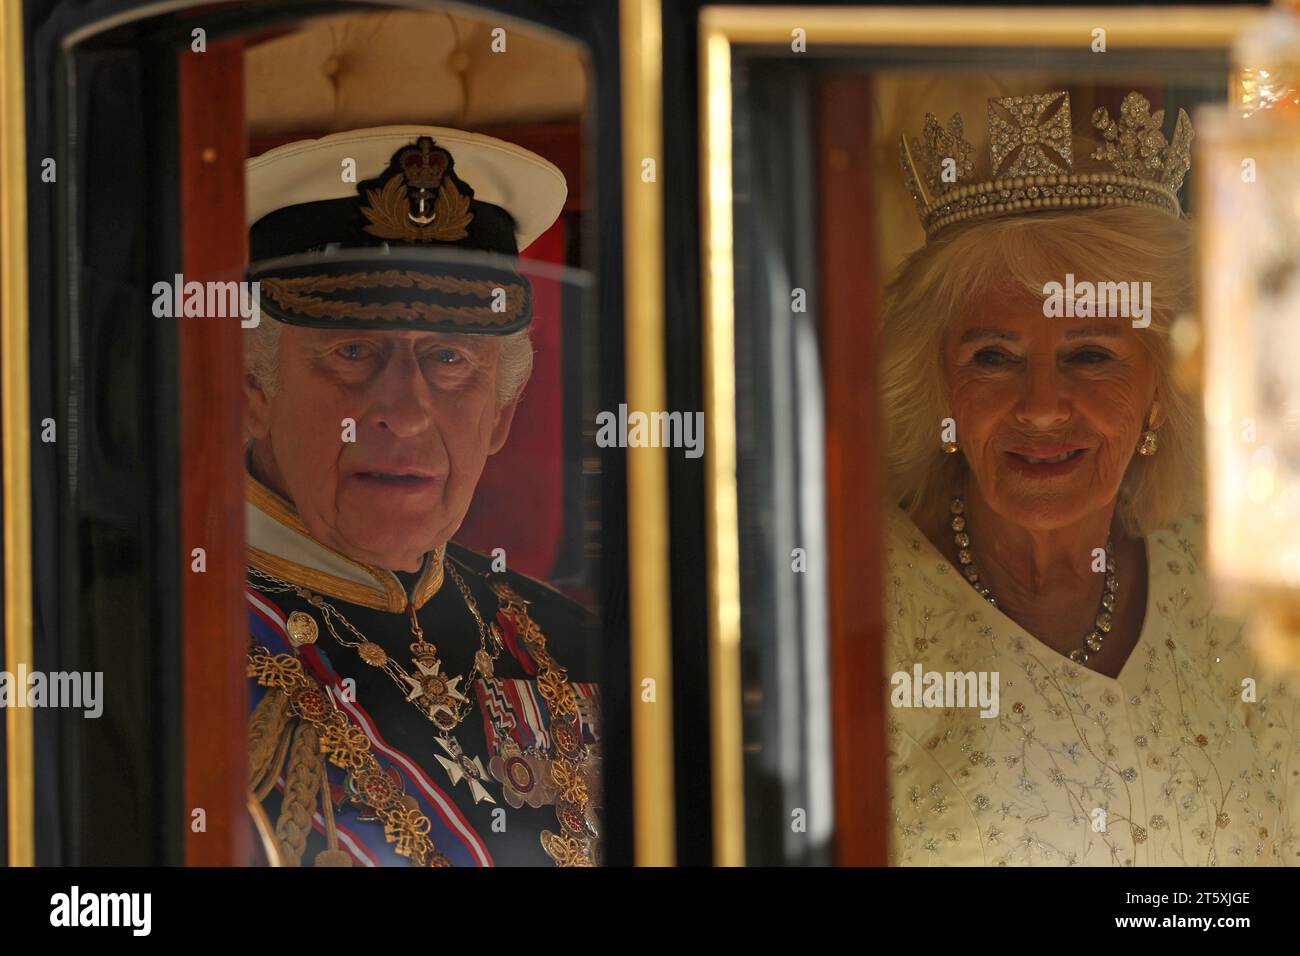 König Karl III. Und Königin Camilla kommen im Diamond Jubilee State Coach im Palace of Westminster an, bevor das Parlament im House of Lords in London eröffnet wird. Bilddatum: Dienstag, 7. November 2023. Stockfoto